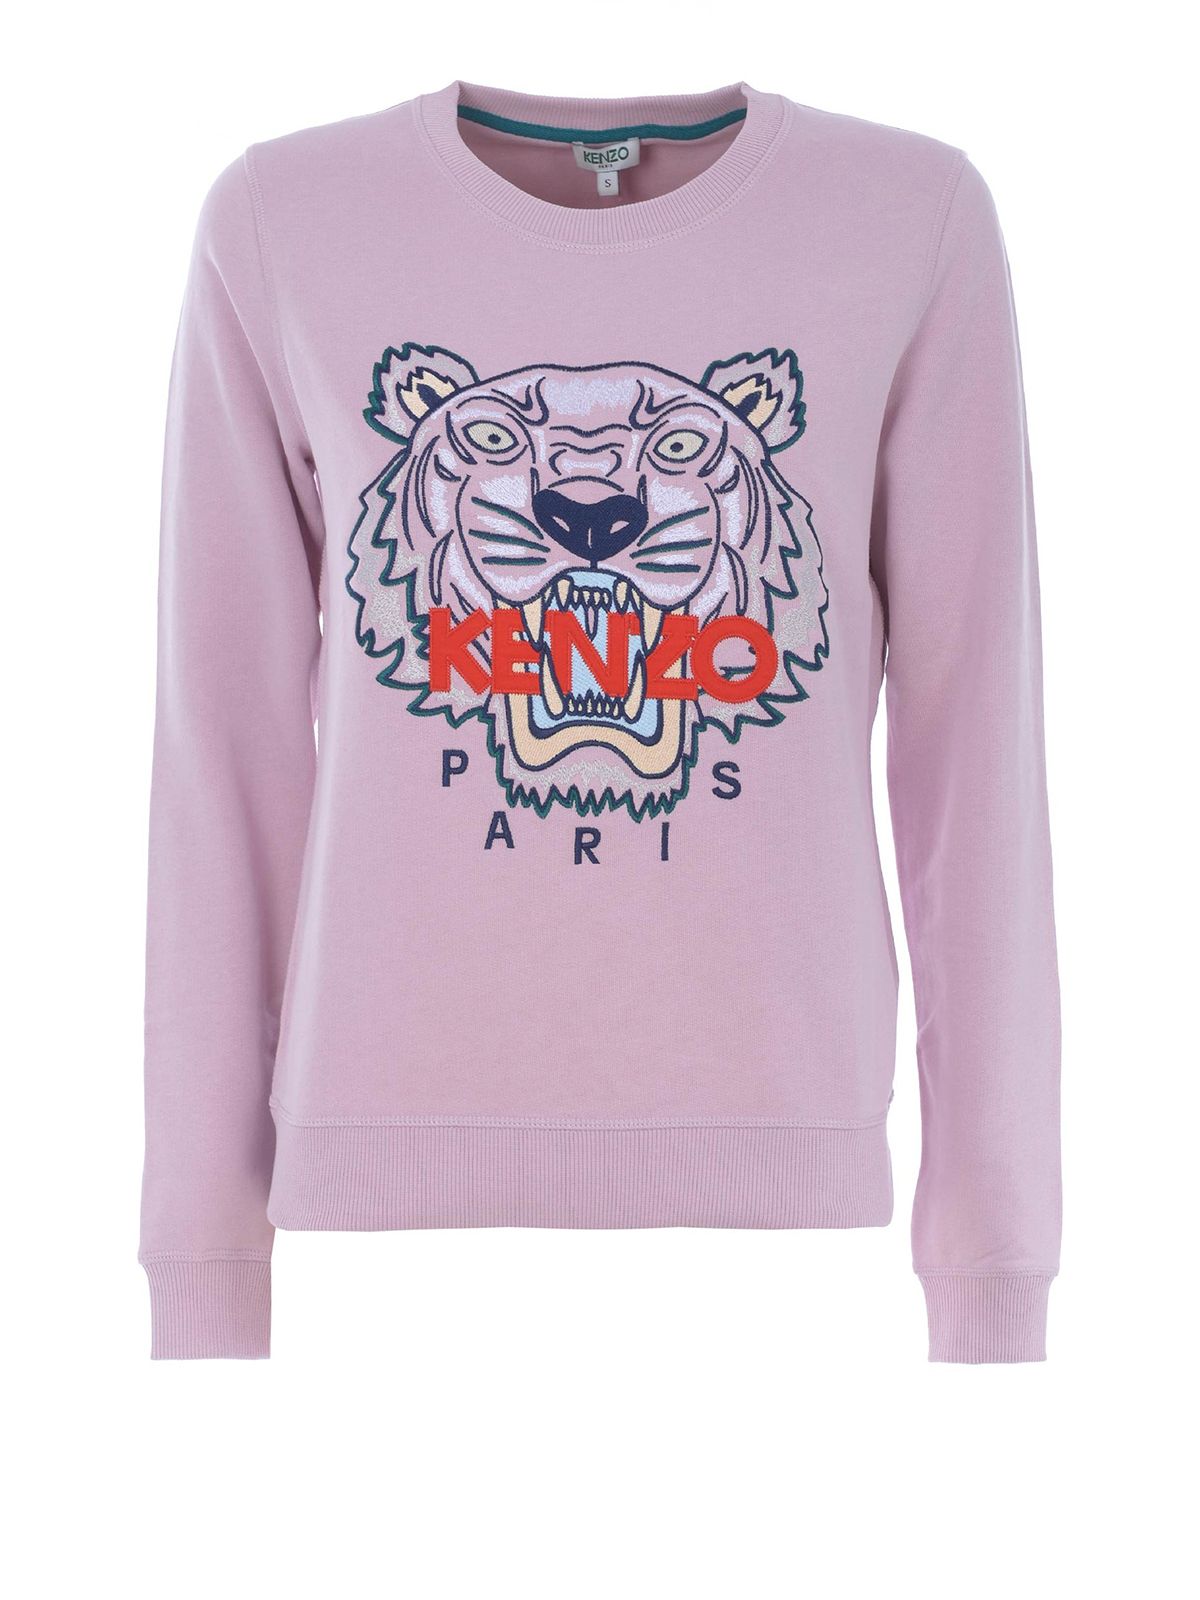 Sweatshirts & Sweaters Kenzo - Pink Tiger embroidery sweatshirt 